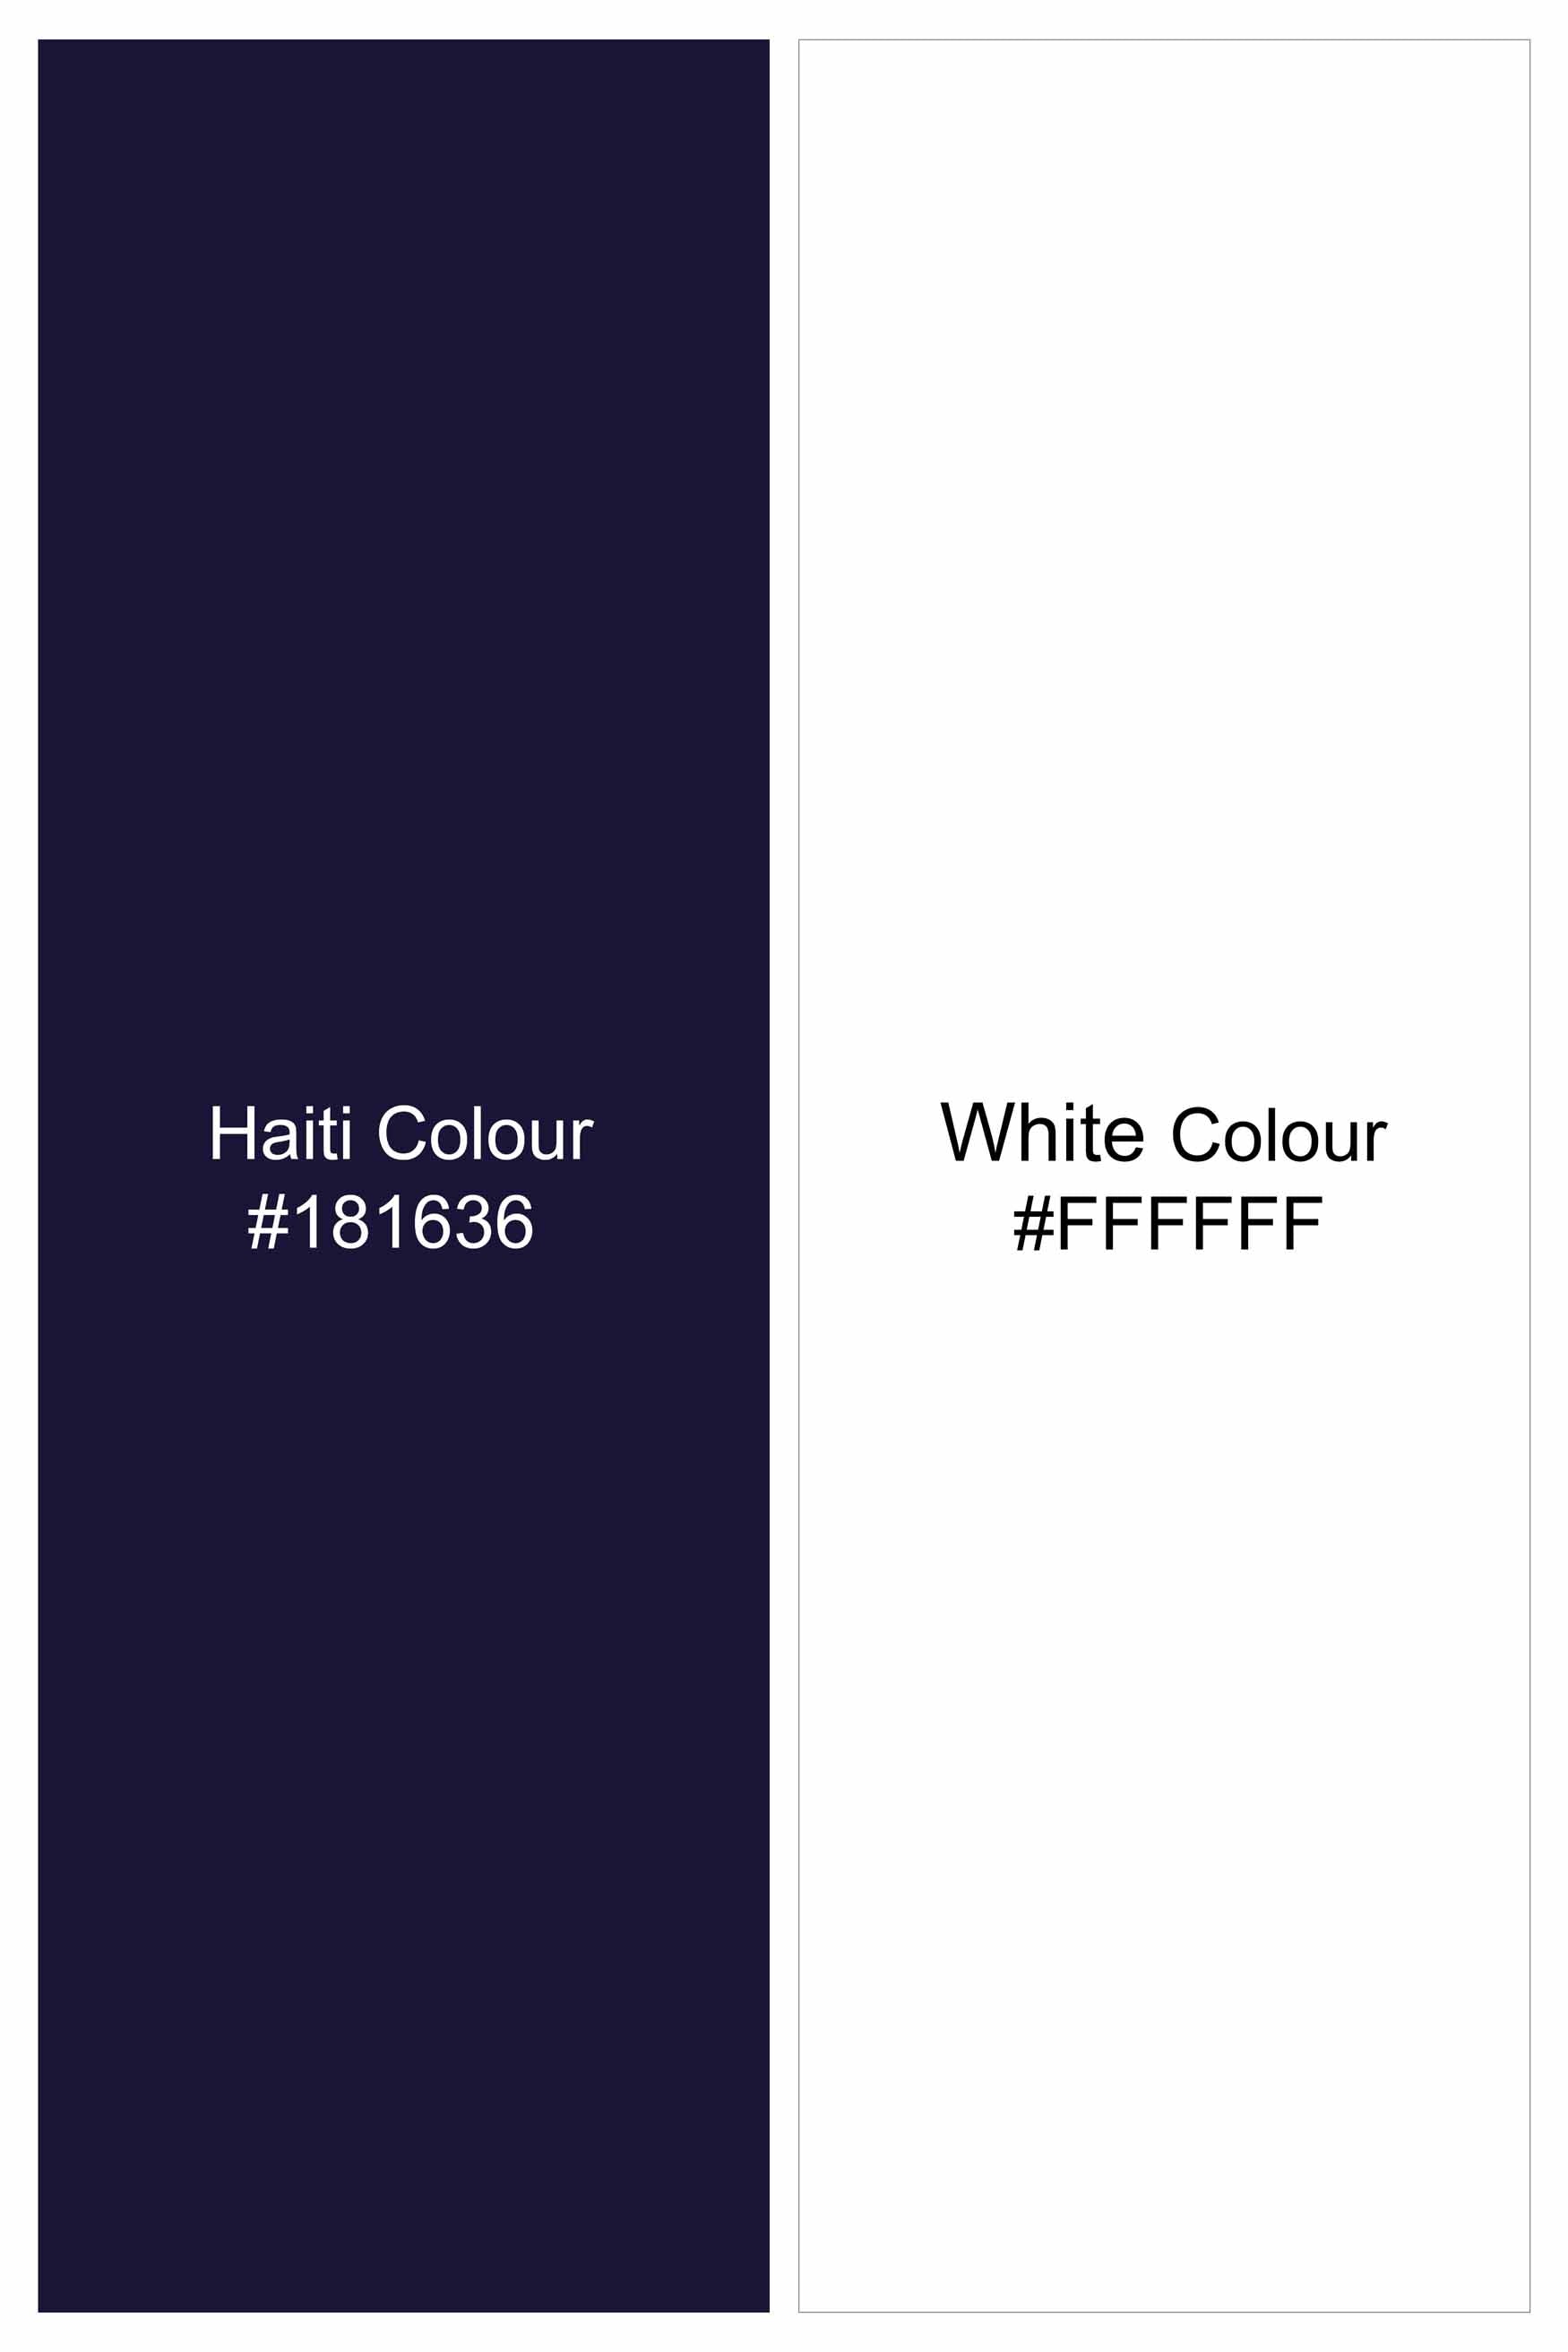 Haiti Blue and White Plaid Twill Premium Cotton Button Down Shirt